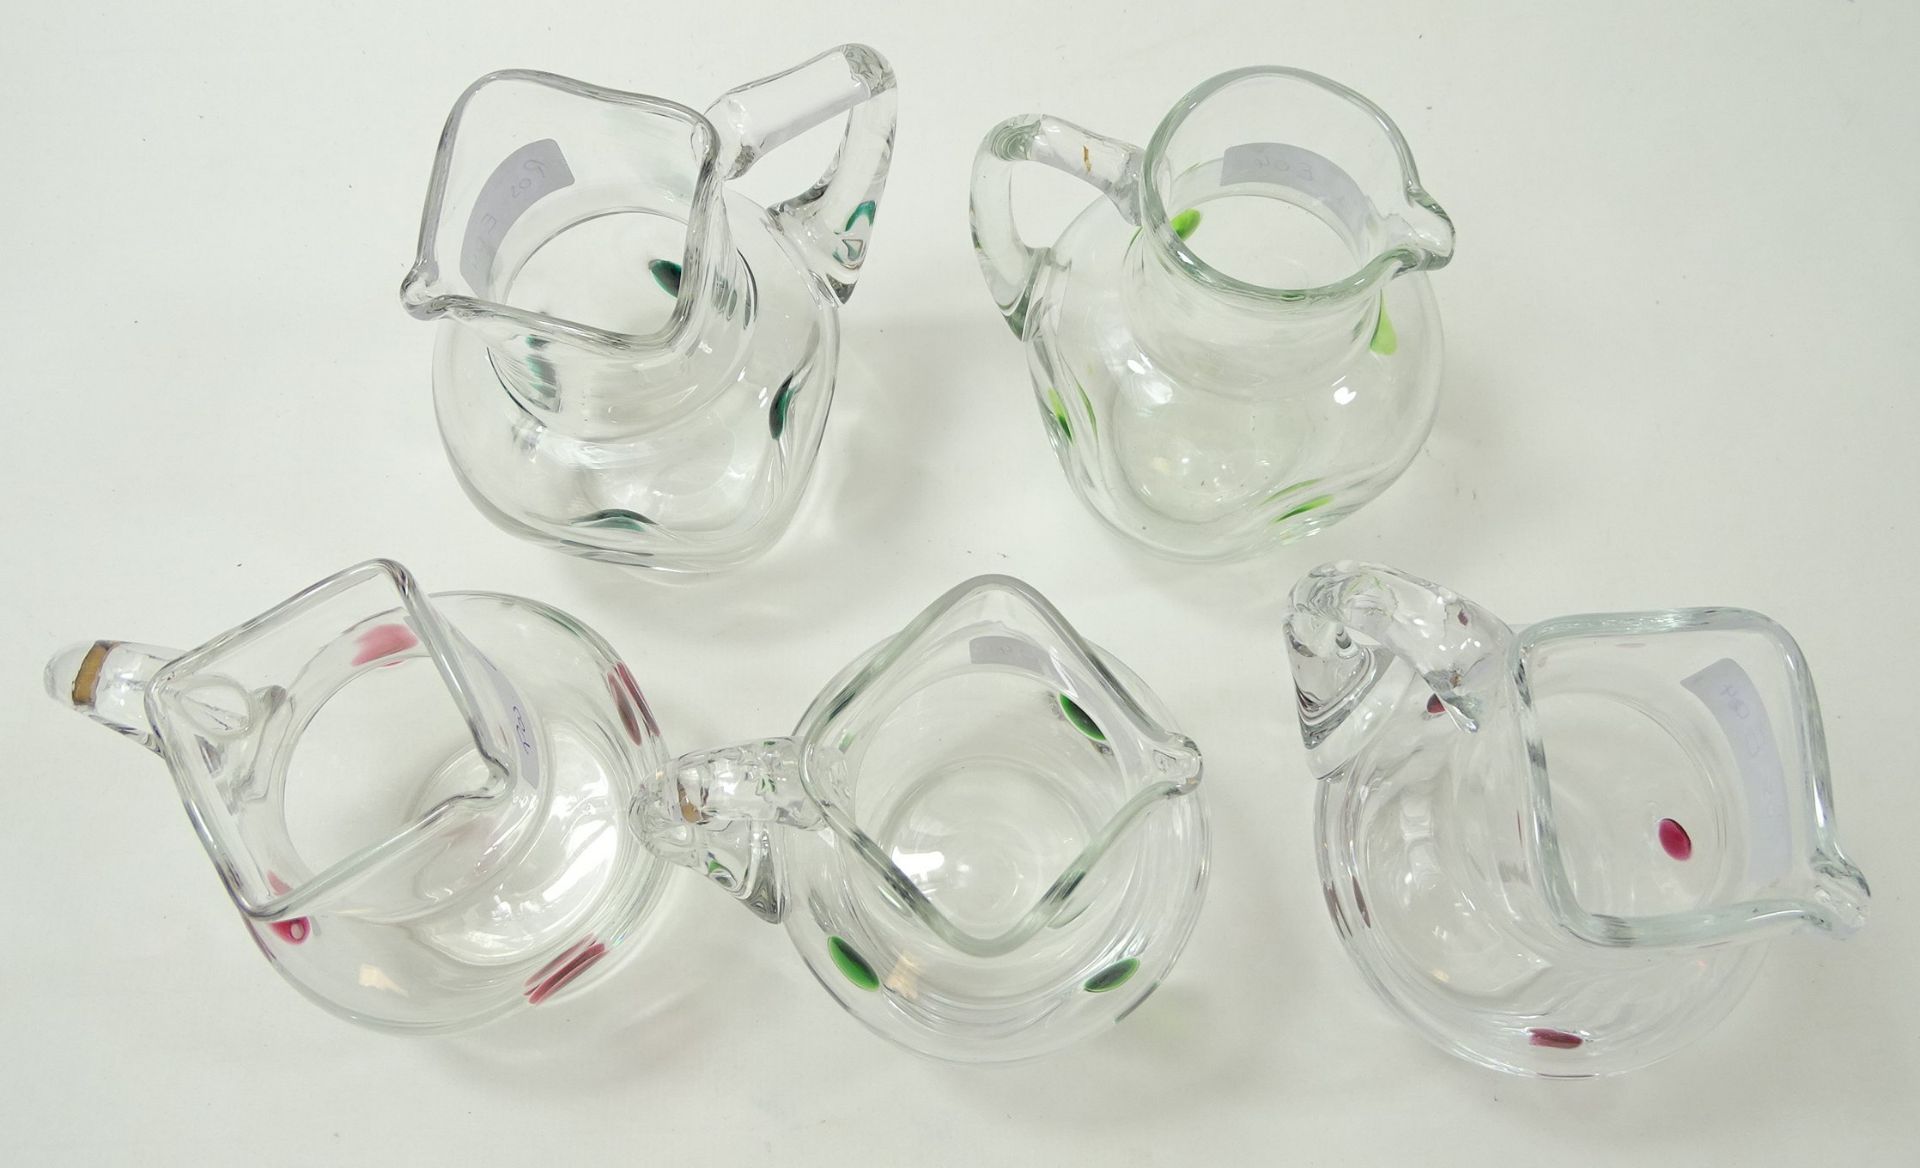 5 Kännchen, klares Glas mit aufgesetzten grünen und roten Punkten, H. 11,5 cm, 3 x eckiger, 1 x run - Image 3 of 7